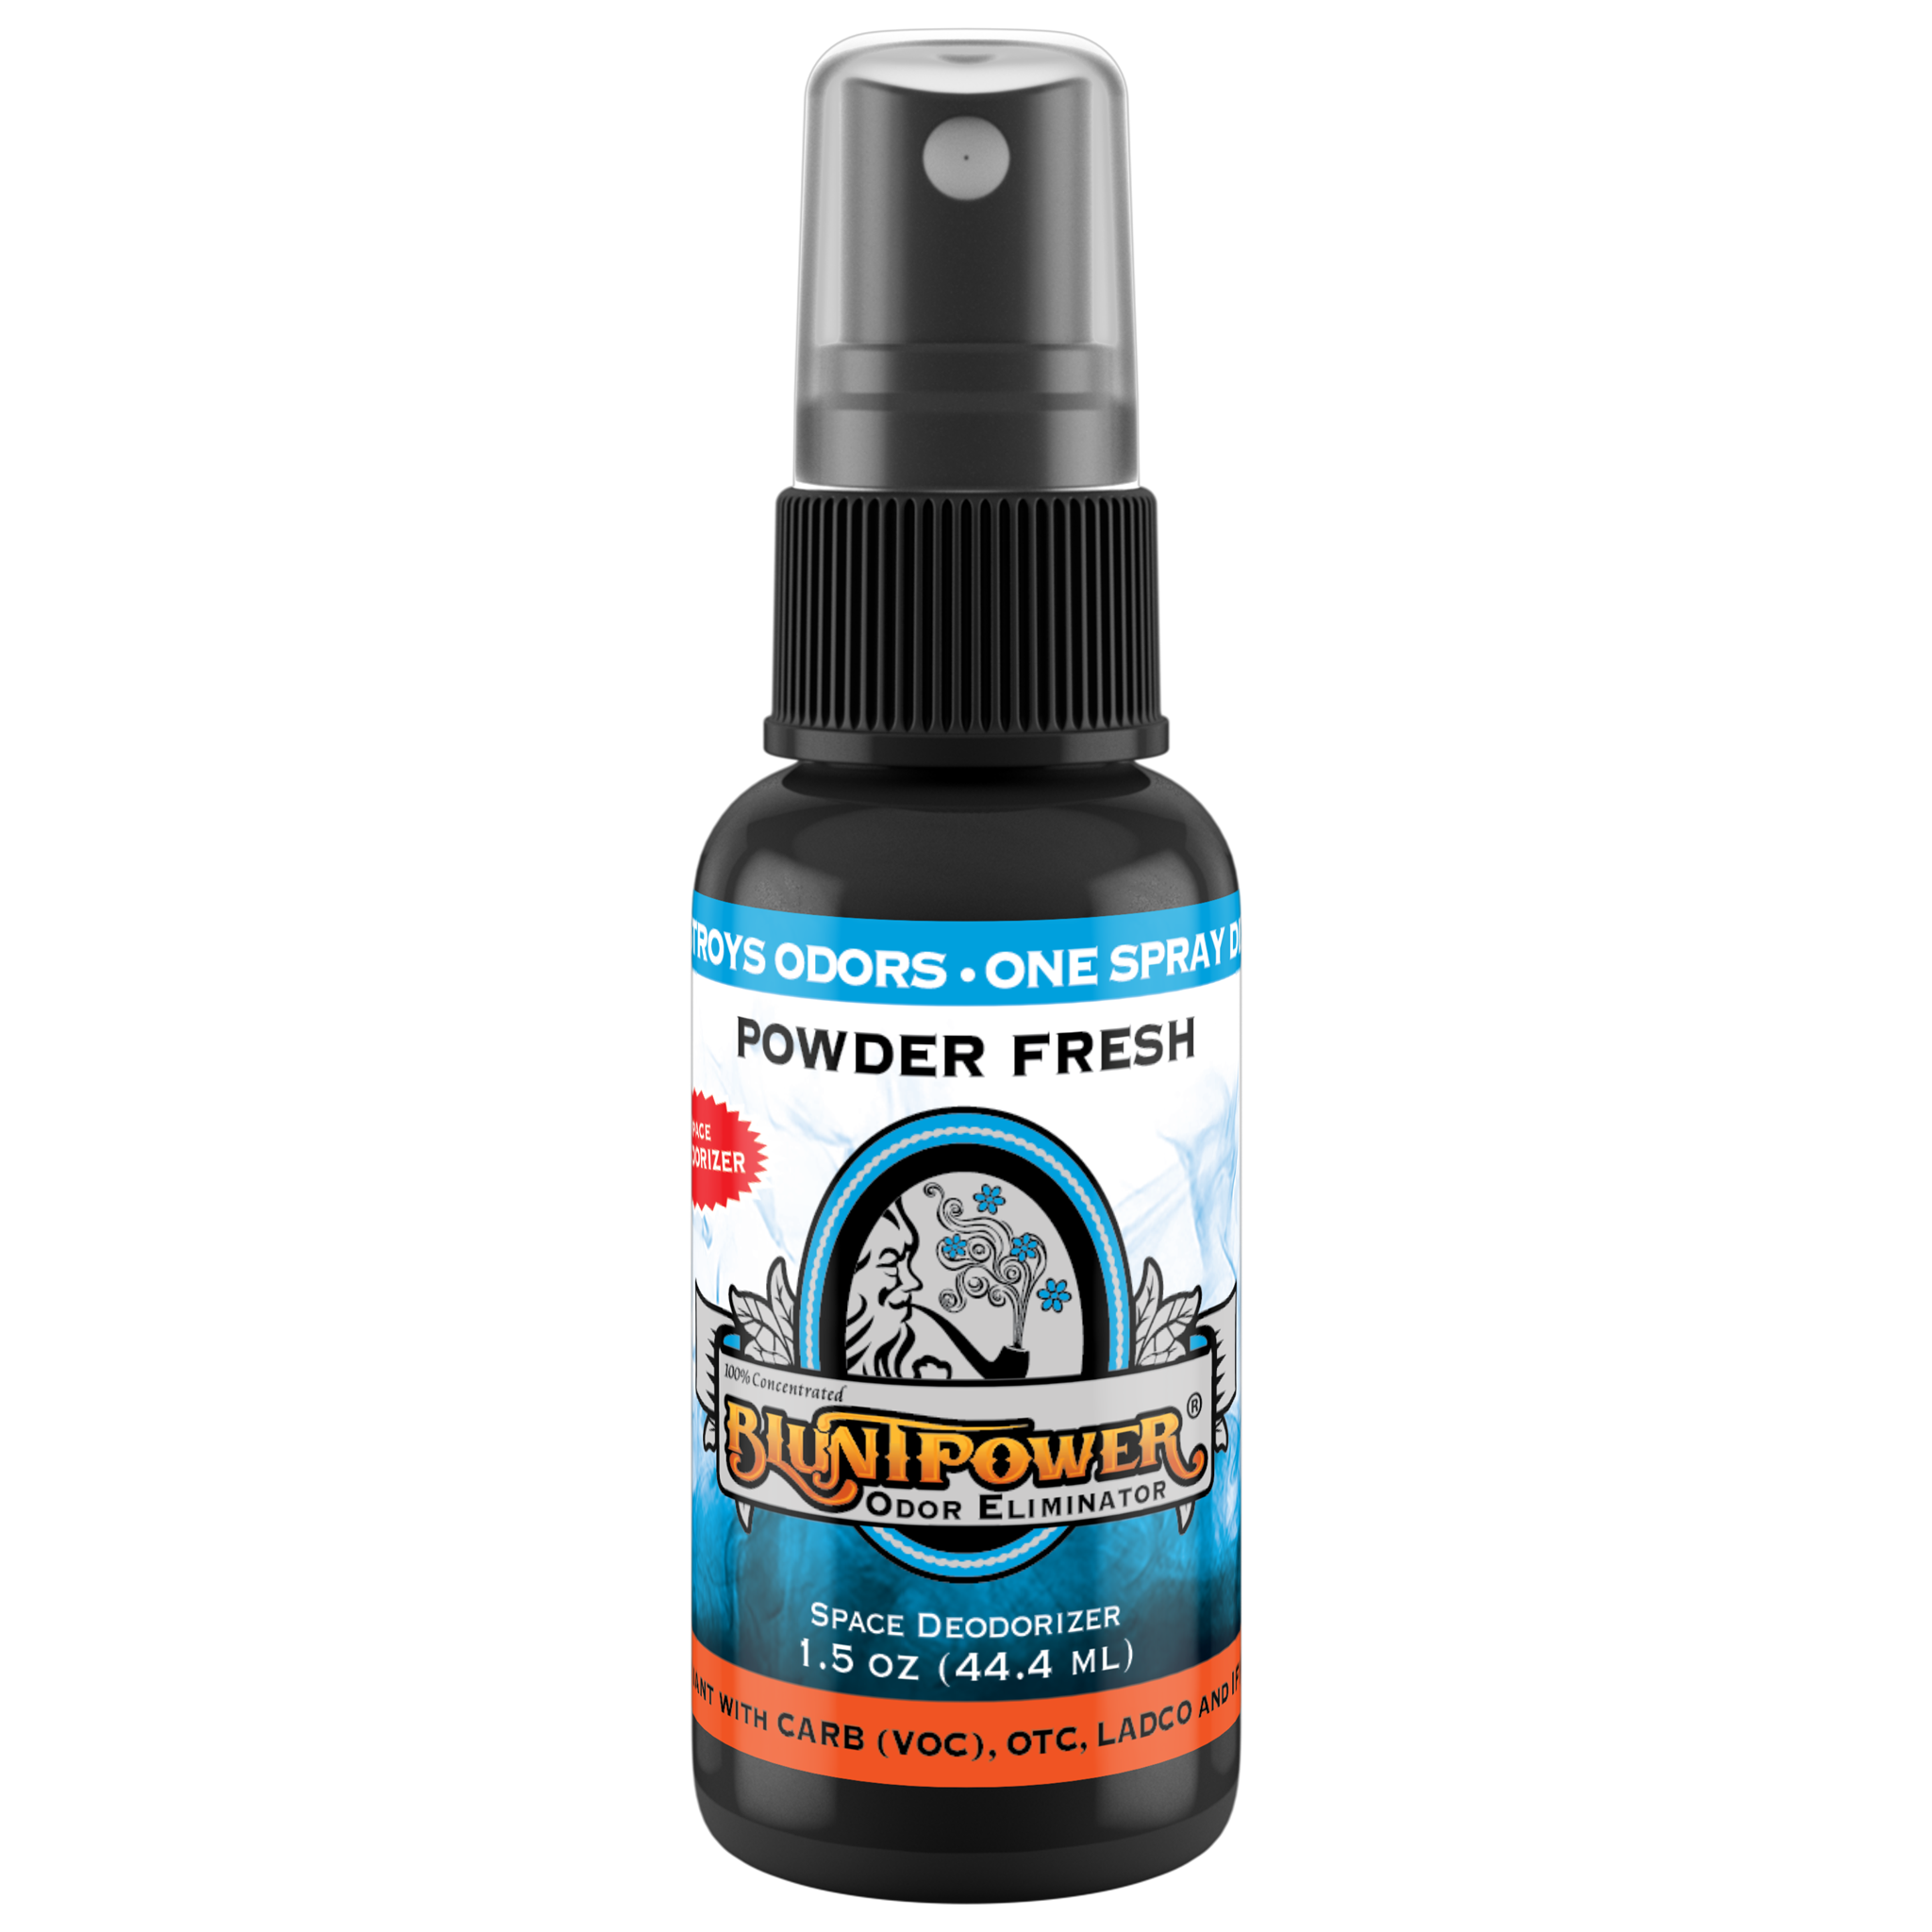 BluntPower Odor Eliminator - Powder Fresh Scent